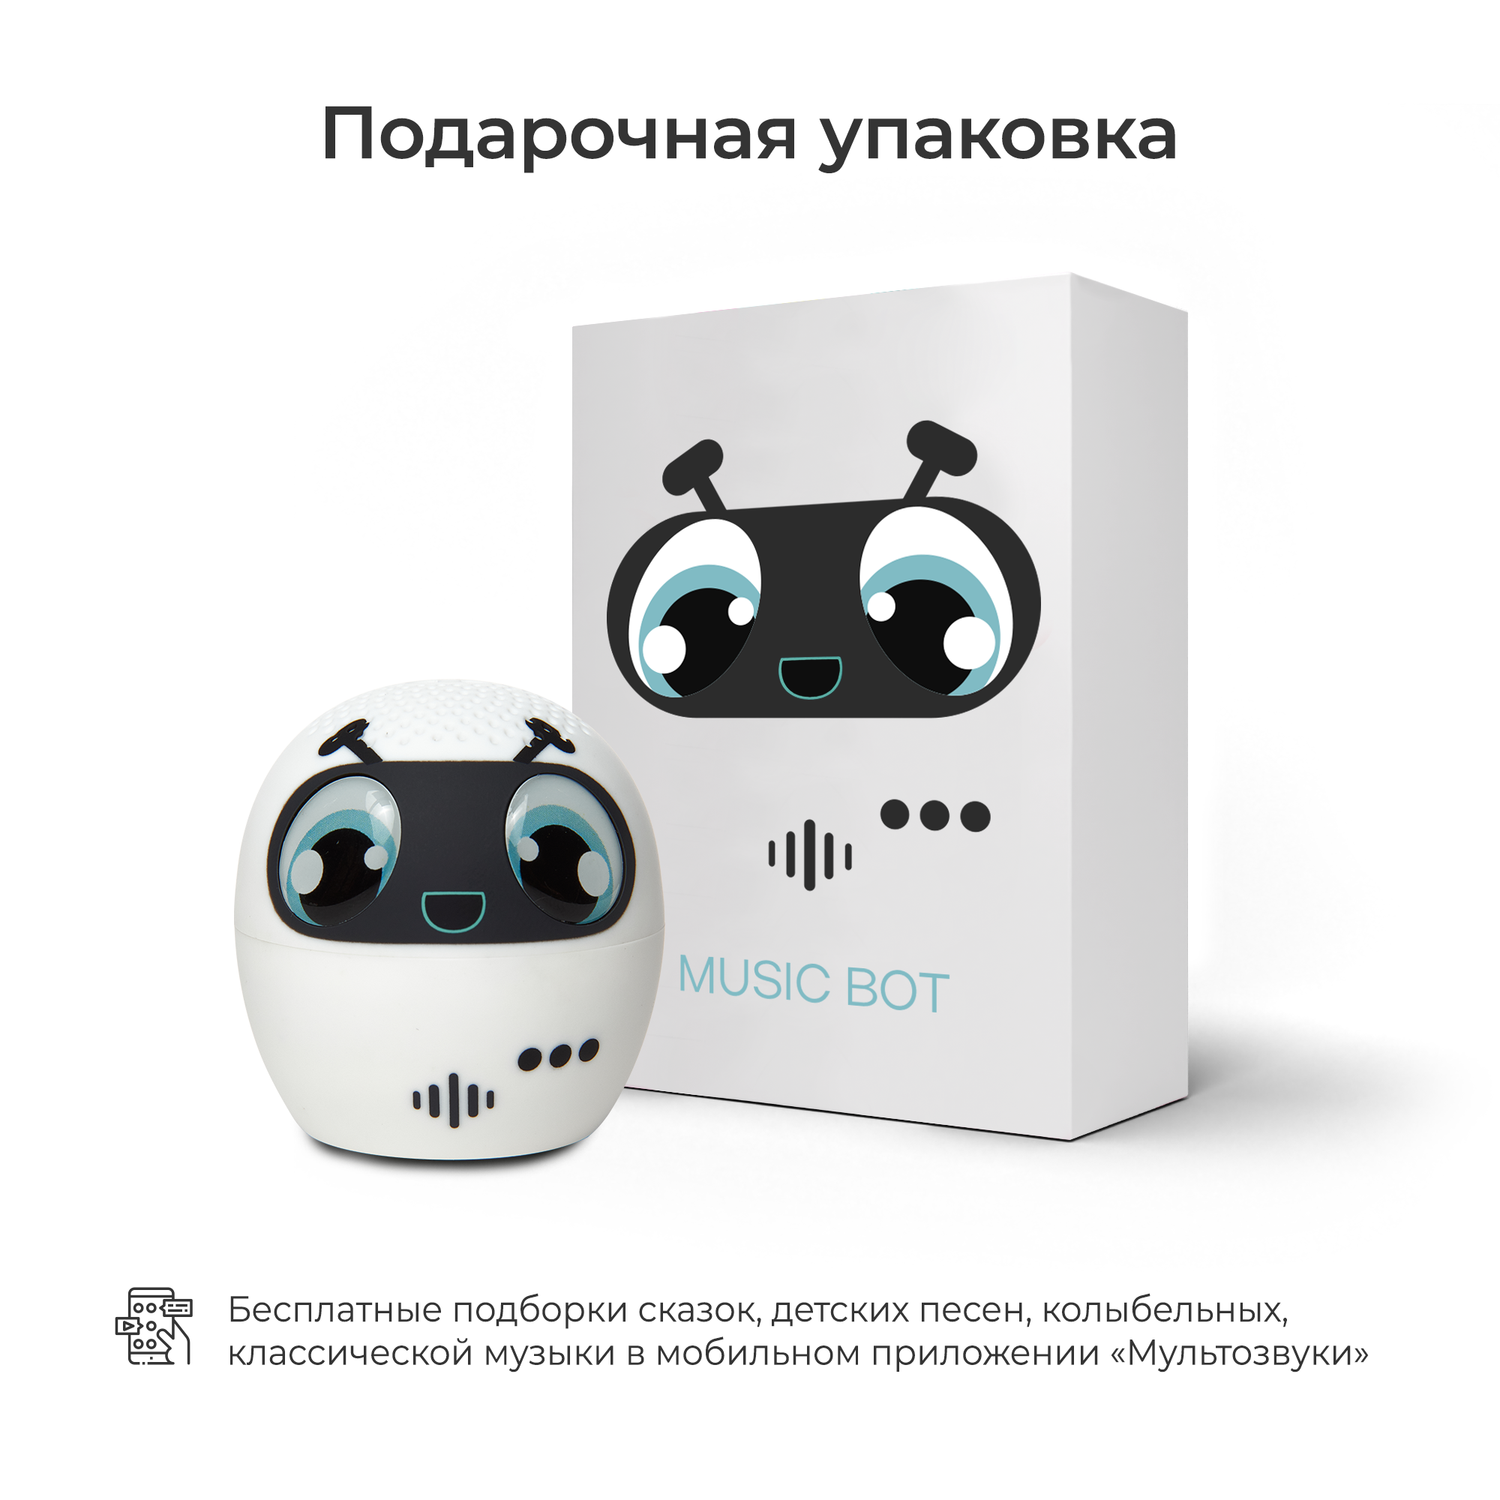 Детская колонка музыкальная Мультозвуки Music Bot детская игрушка - фото 3